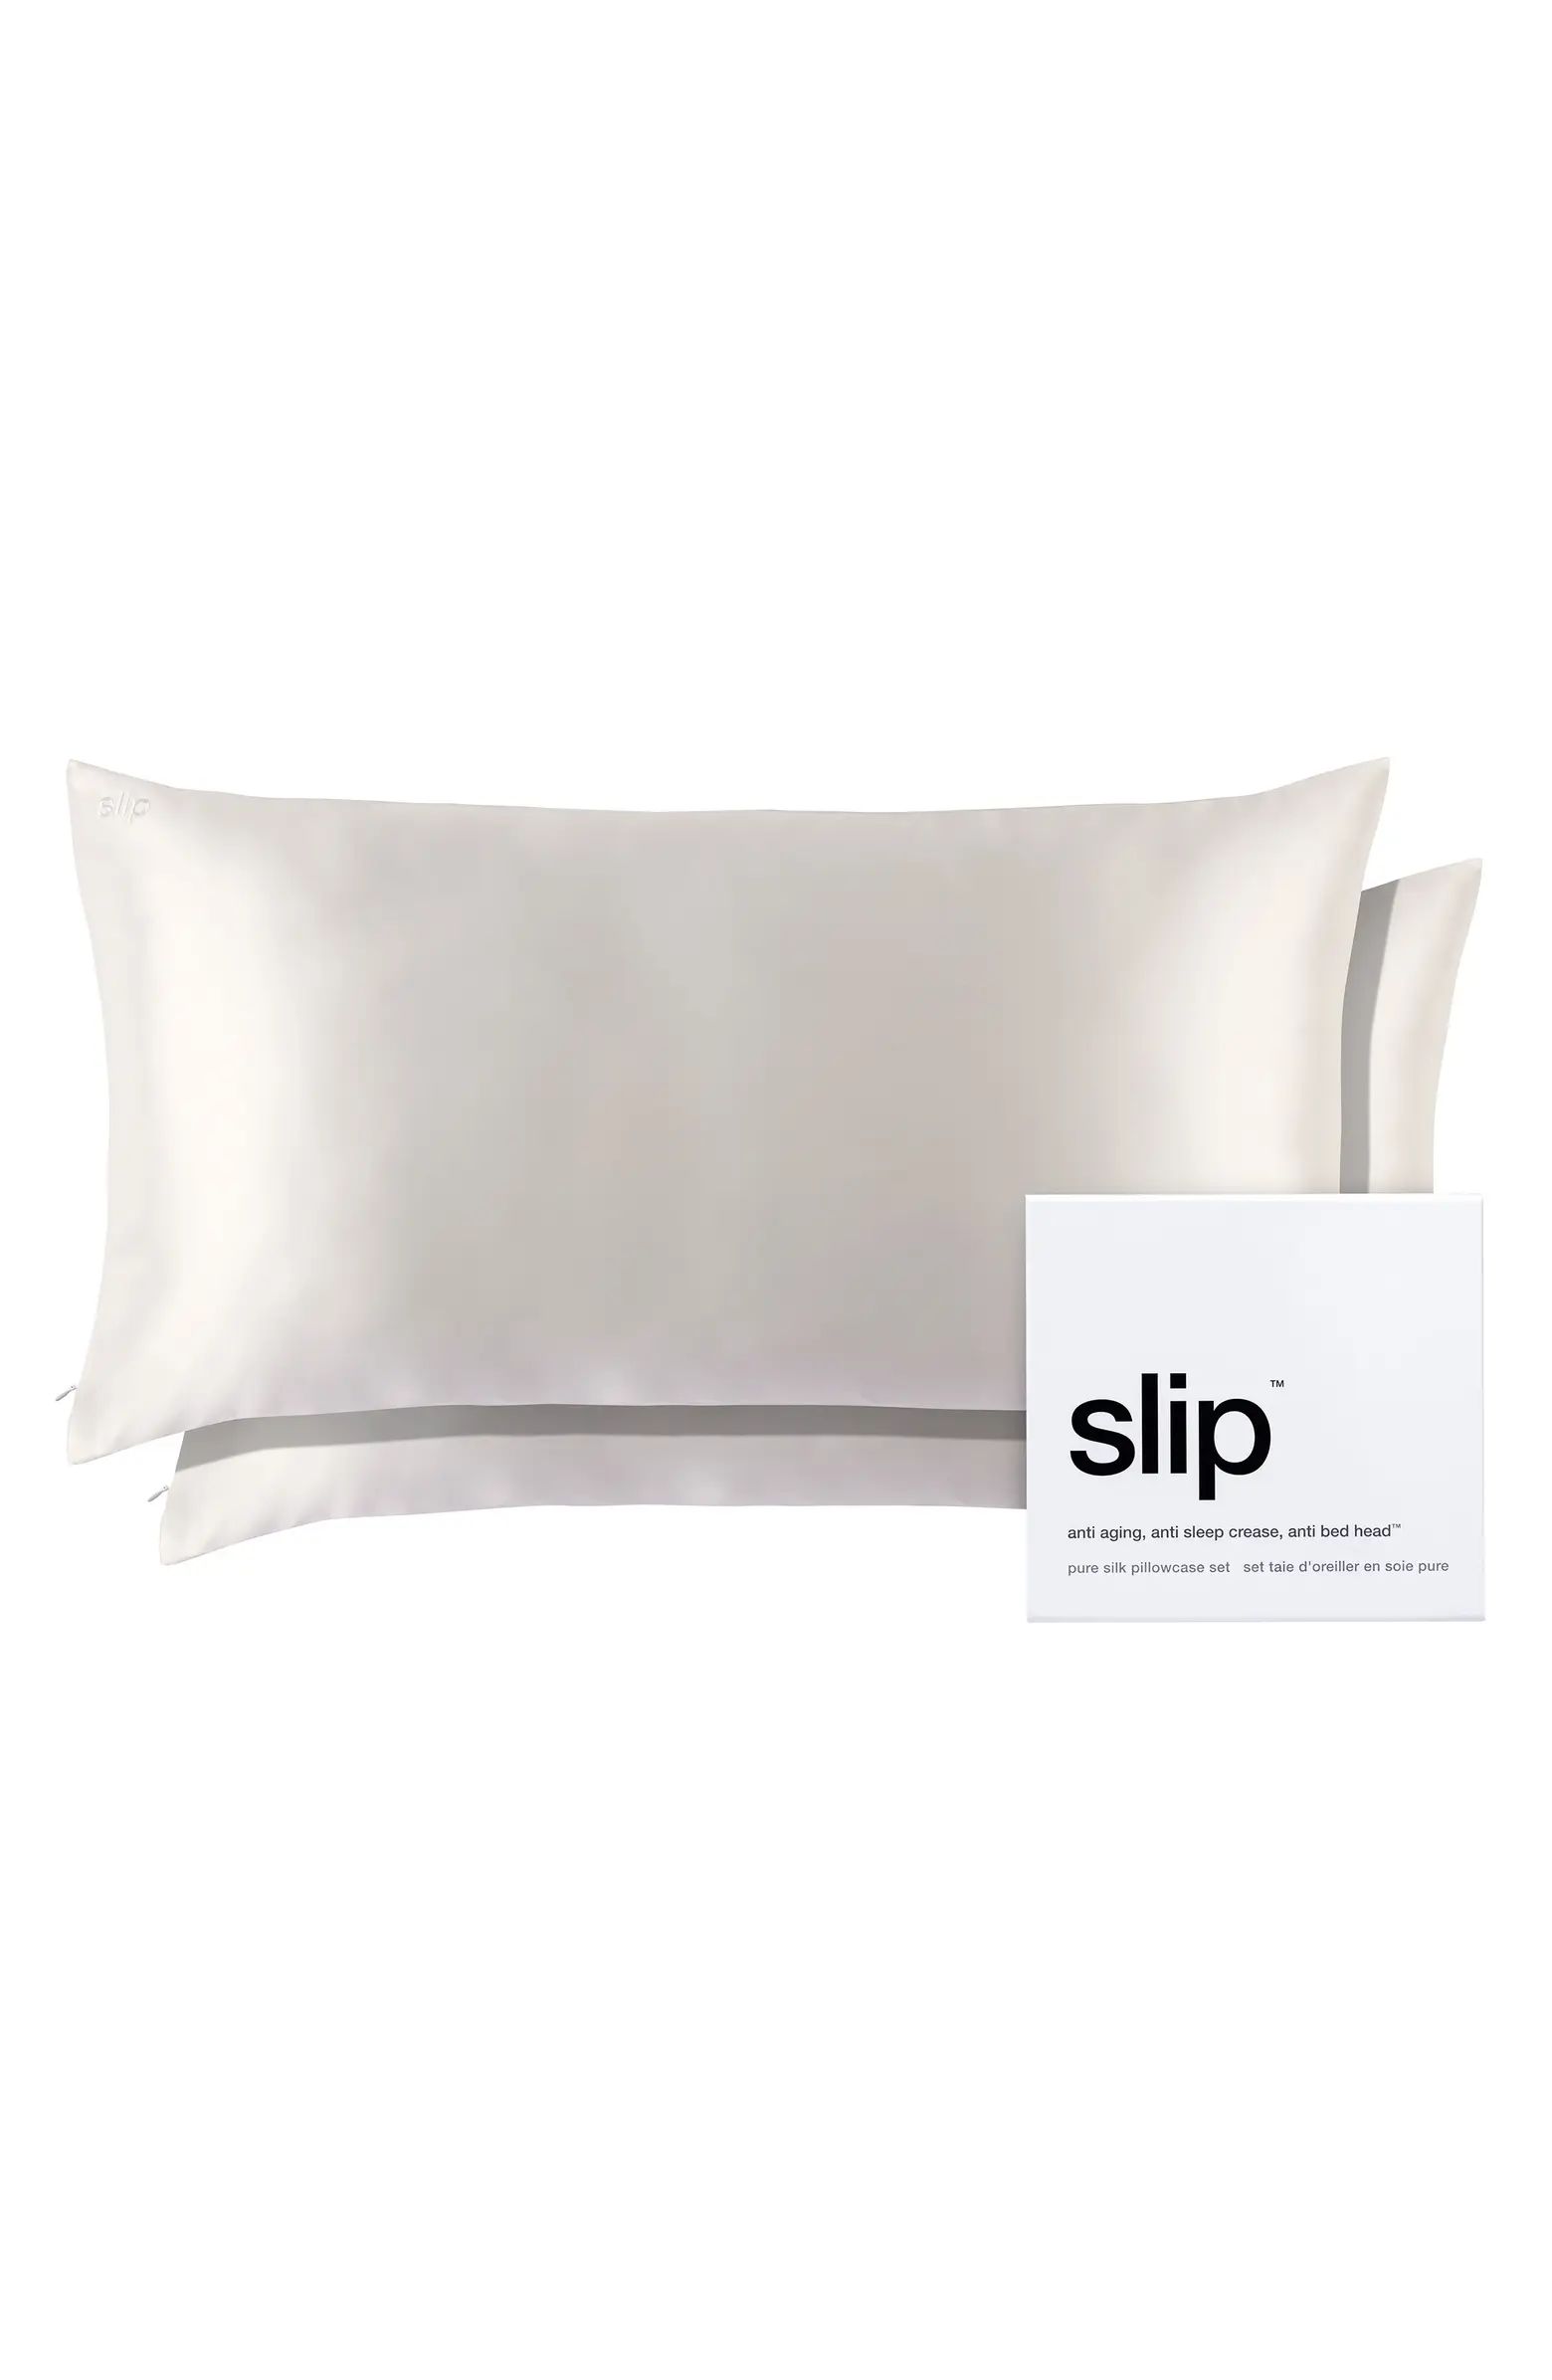 Set of 2 Silk King Pillowcases $220 Value | Nordstrom